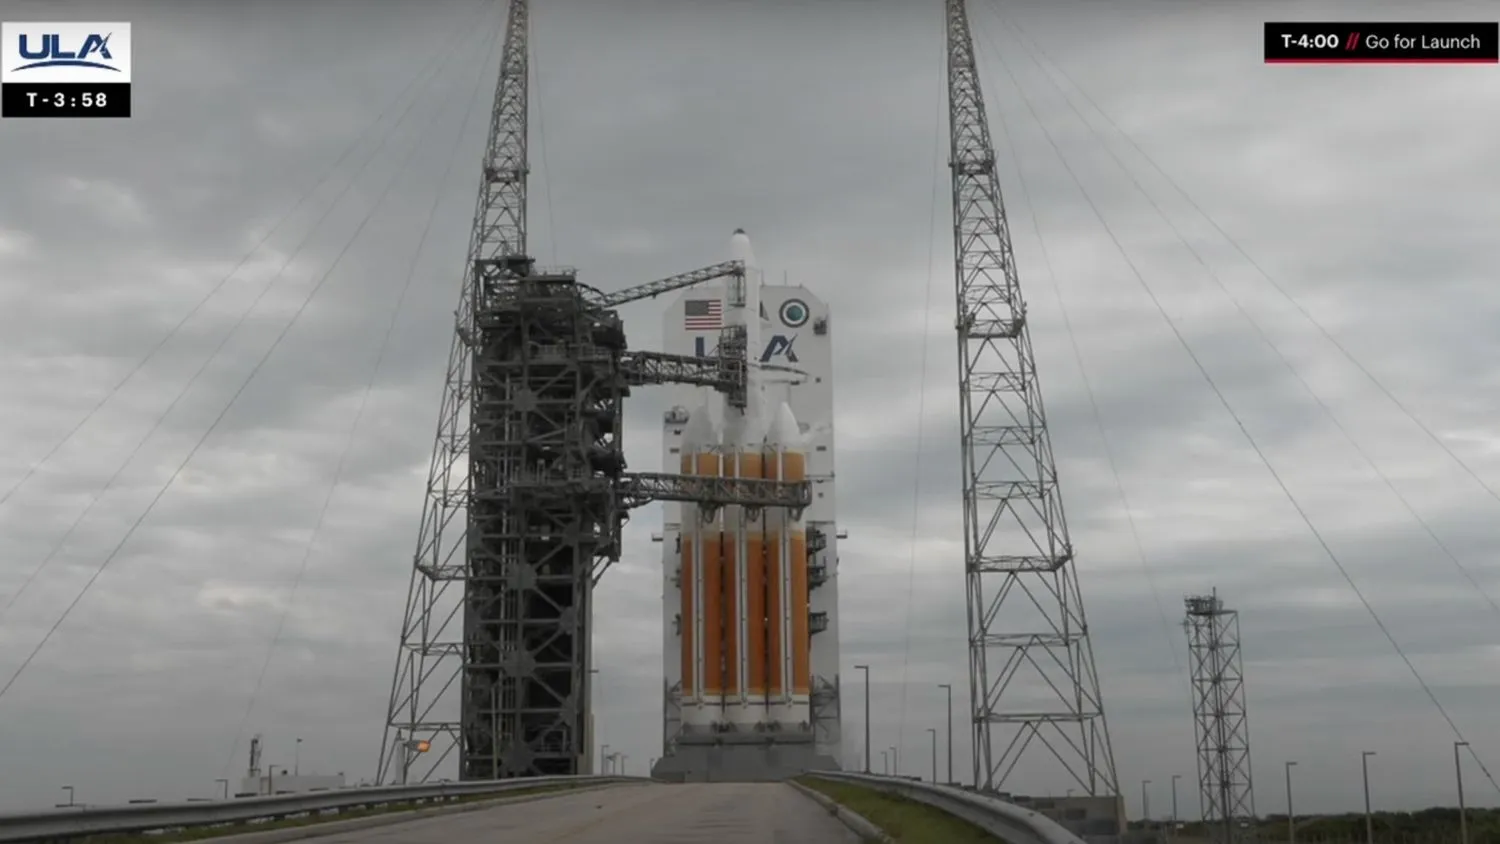 Mehr über den Artikel erfahren Letzter Start einer Delta IV Heavy-Rakete wird nach dem Countdown abgebrochen